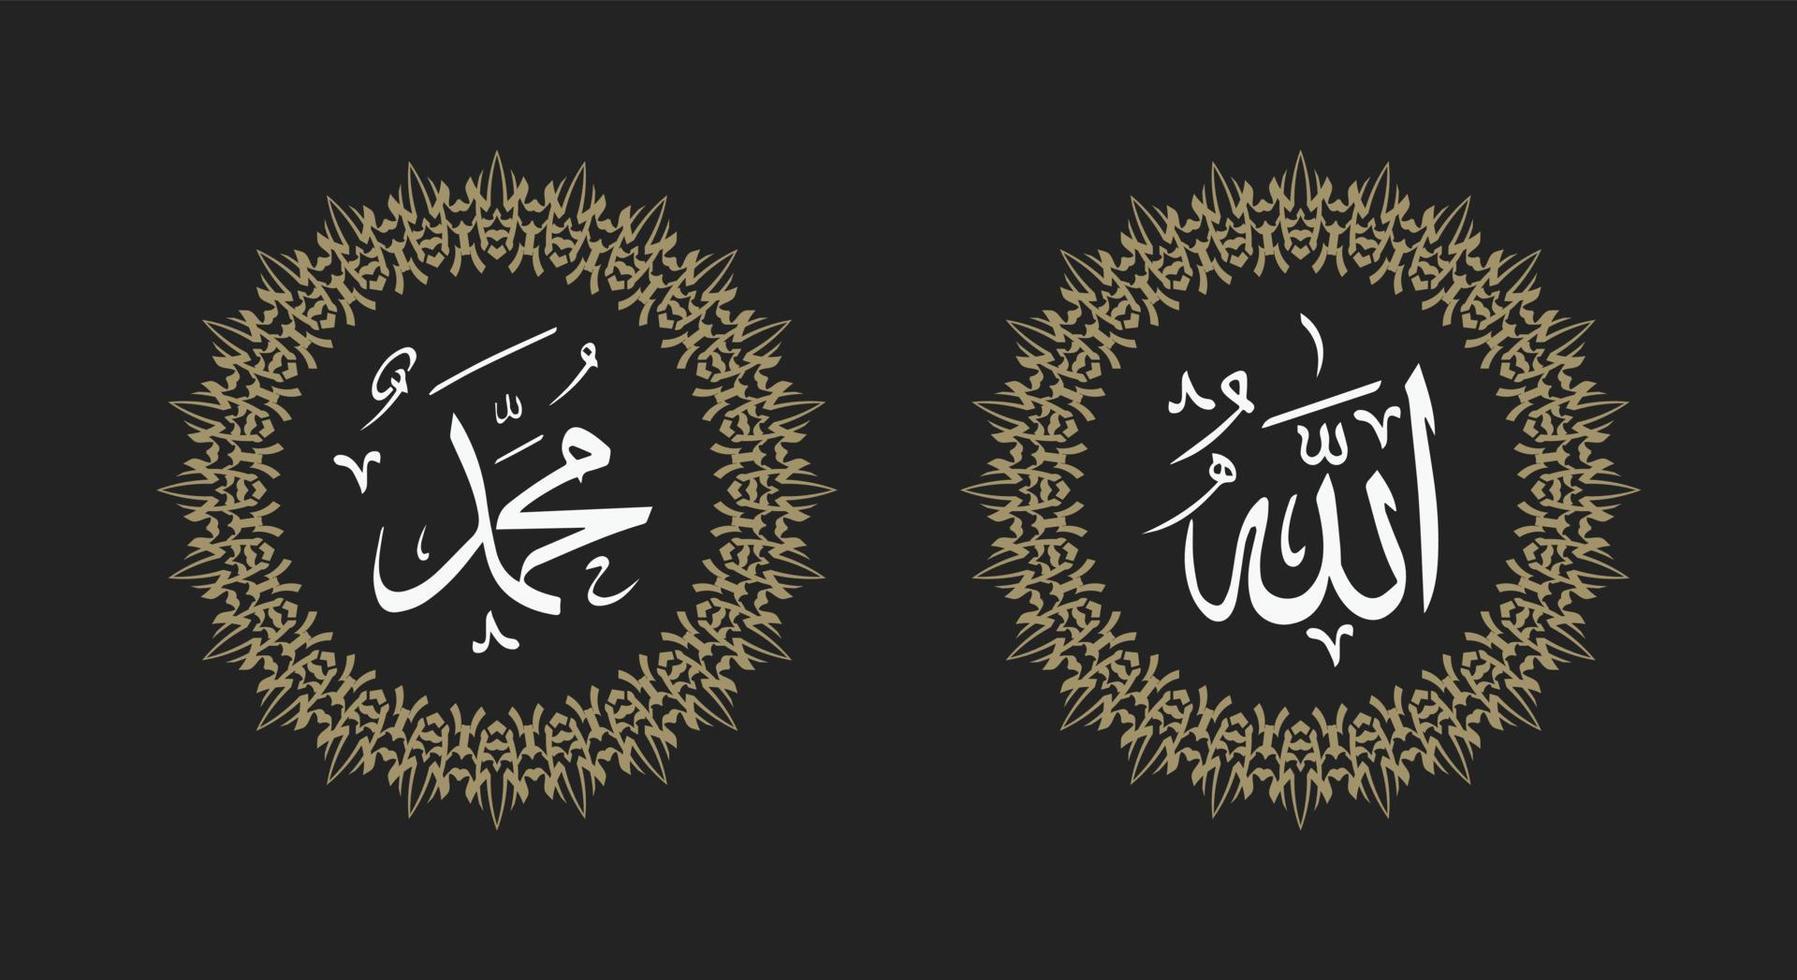 islamische kalligraphie von allah muhammad mit retro-farbe und rundem rahmen oder kreisrahmen vektor